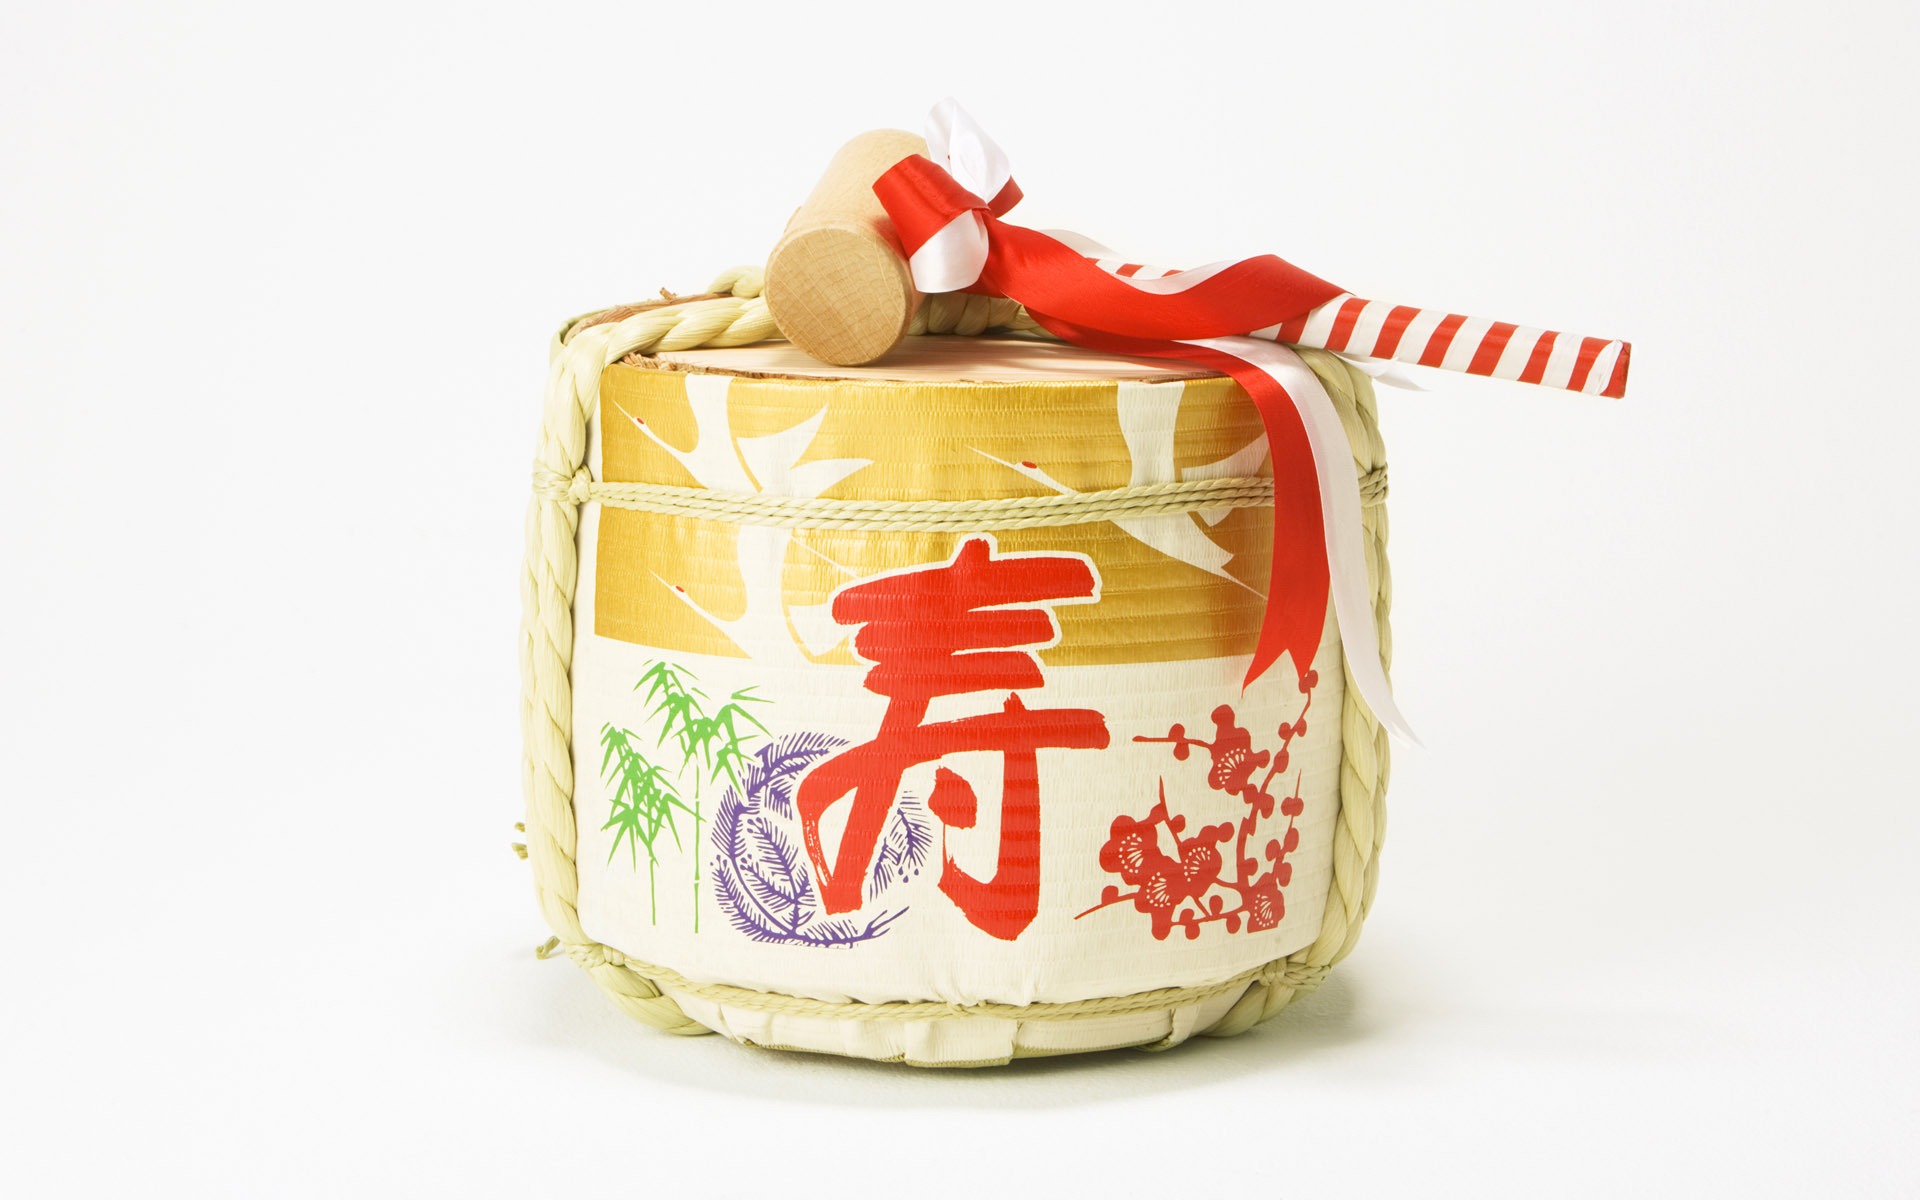 Fondos de año nuevo japonés Cultura (2) #12 - 1920x1200